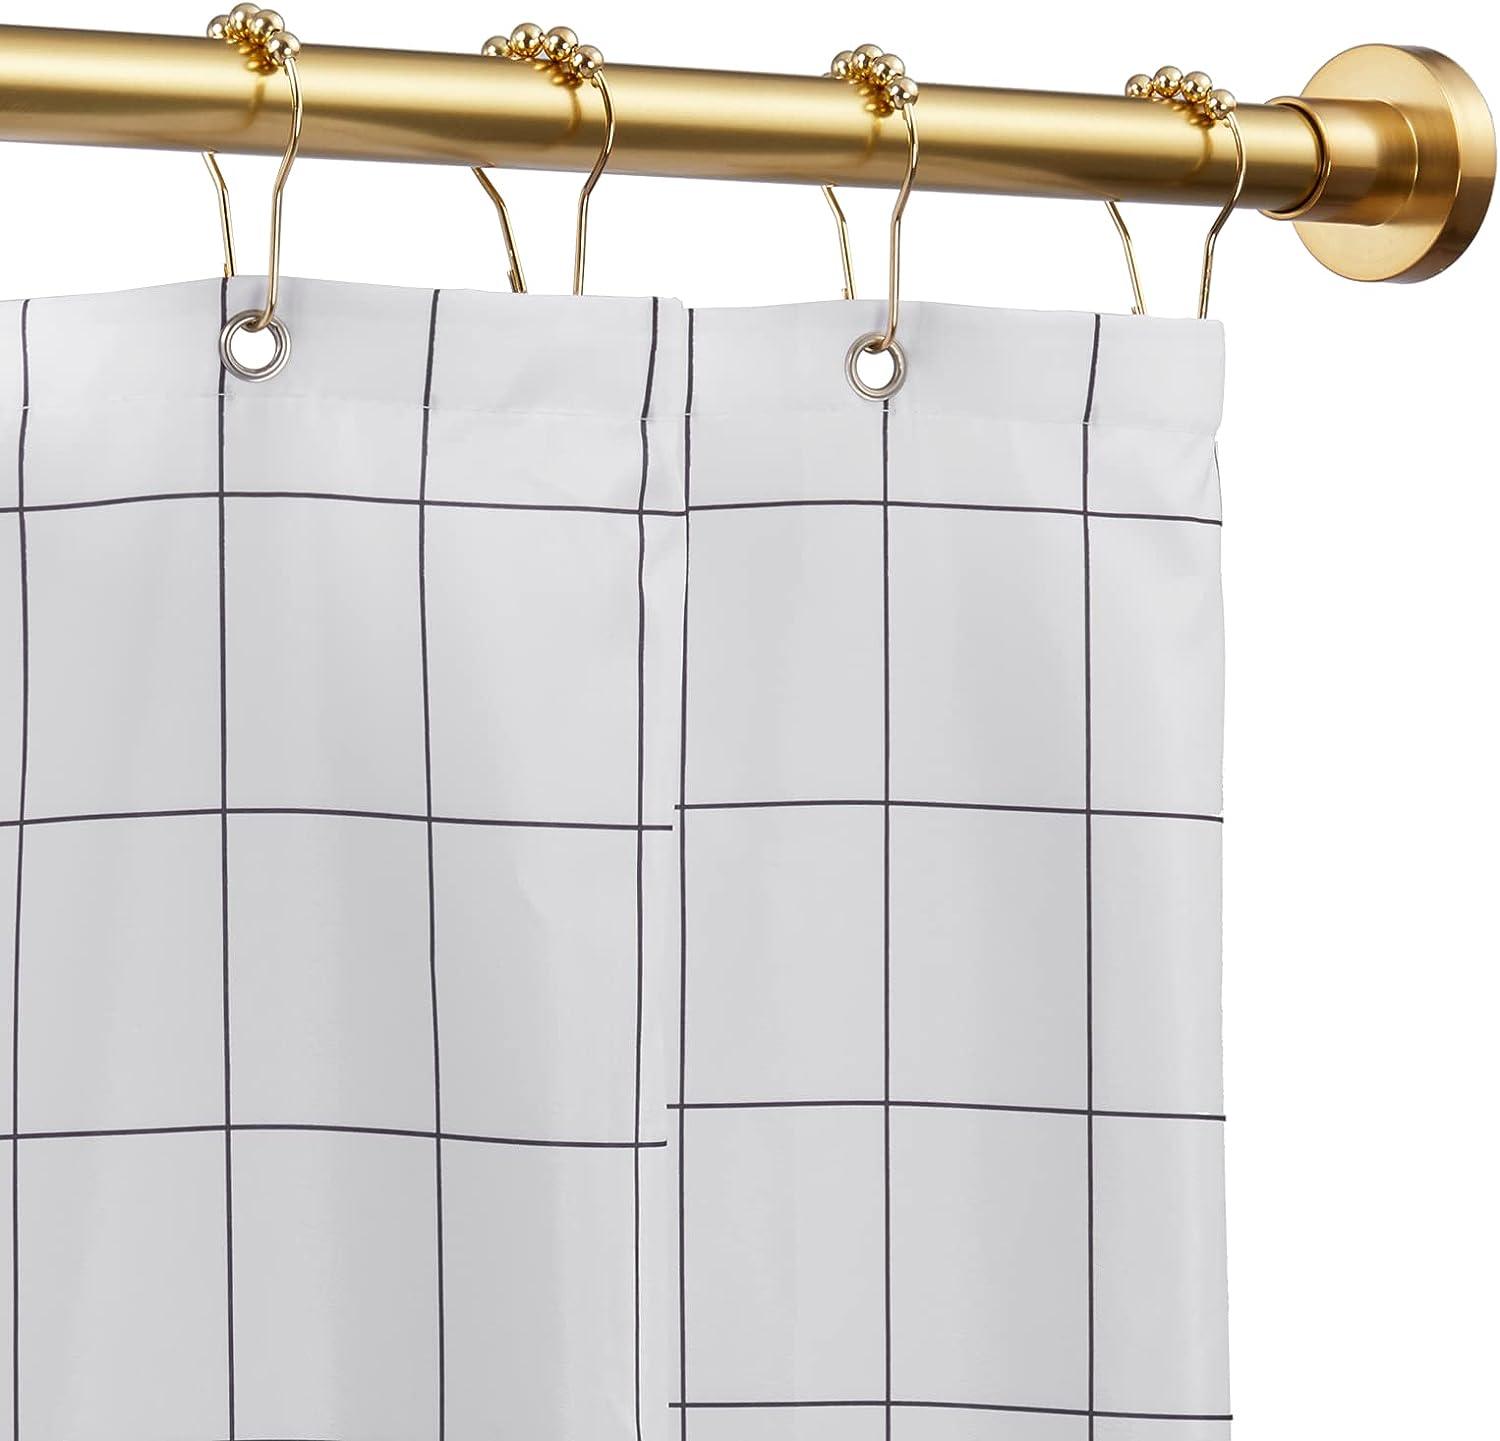 EBOATOP Tensión de la barra de la cortina de ducha nunca se oxida sin -  VIRTUAL MUEBLES